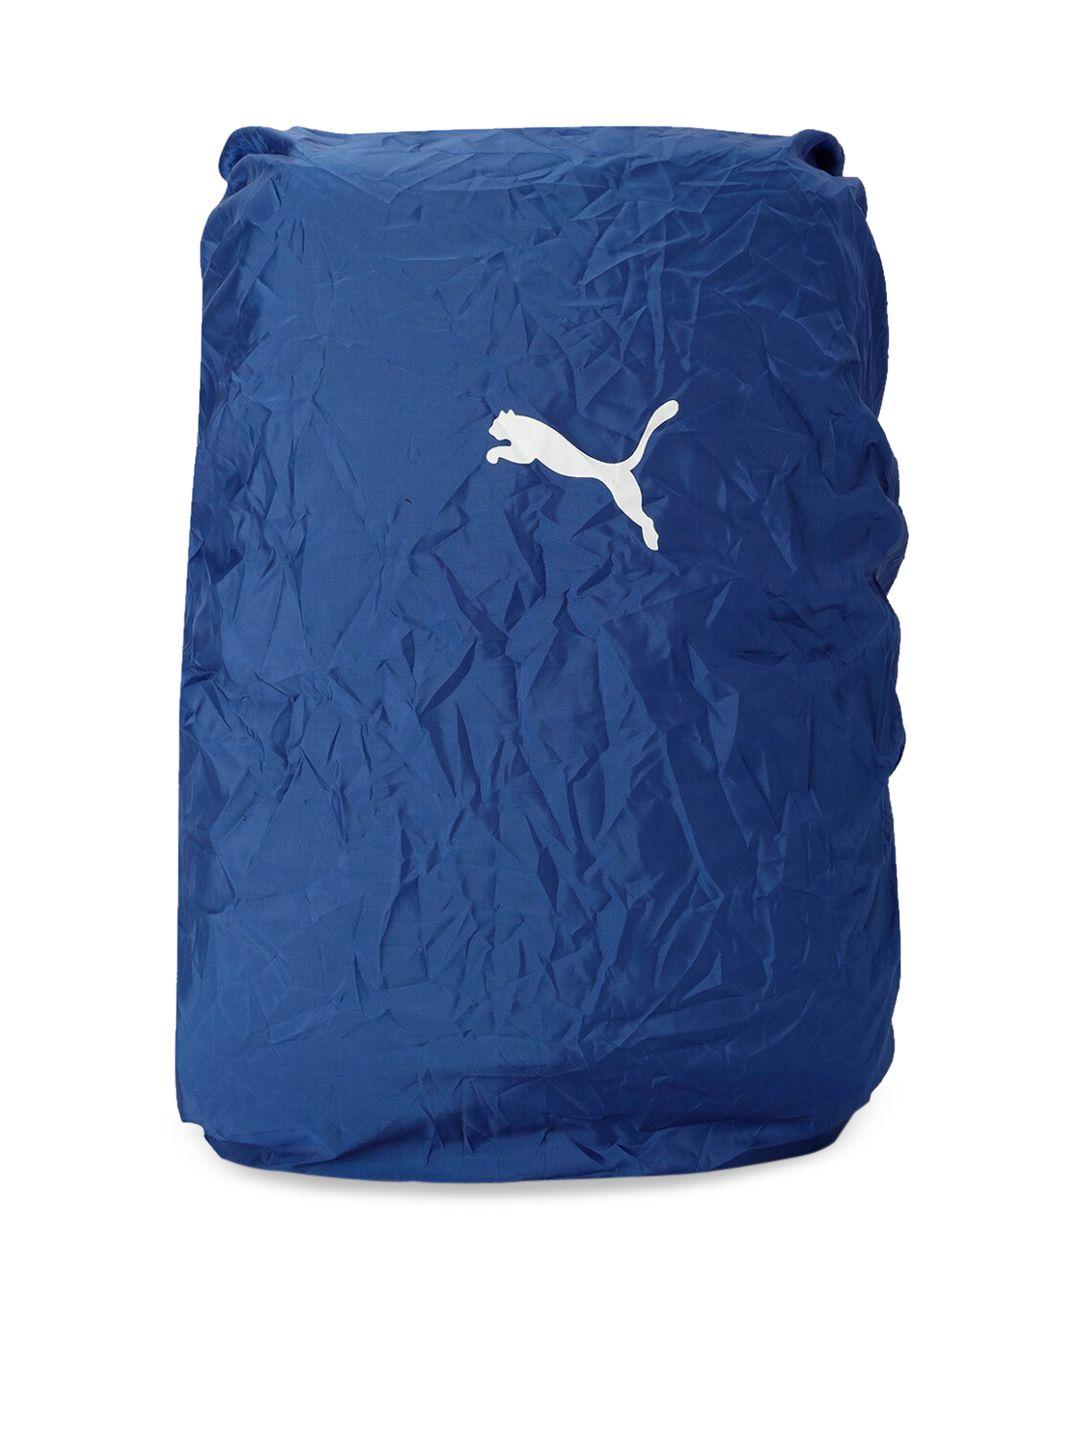 puma-unisex-blue-solid-packable-rain-cover